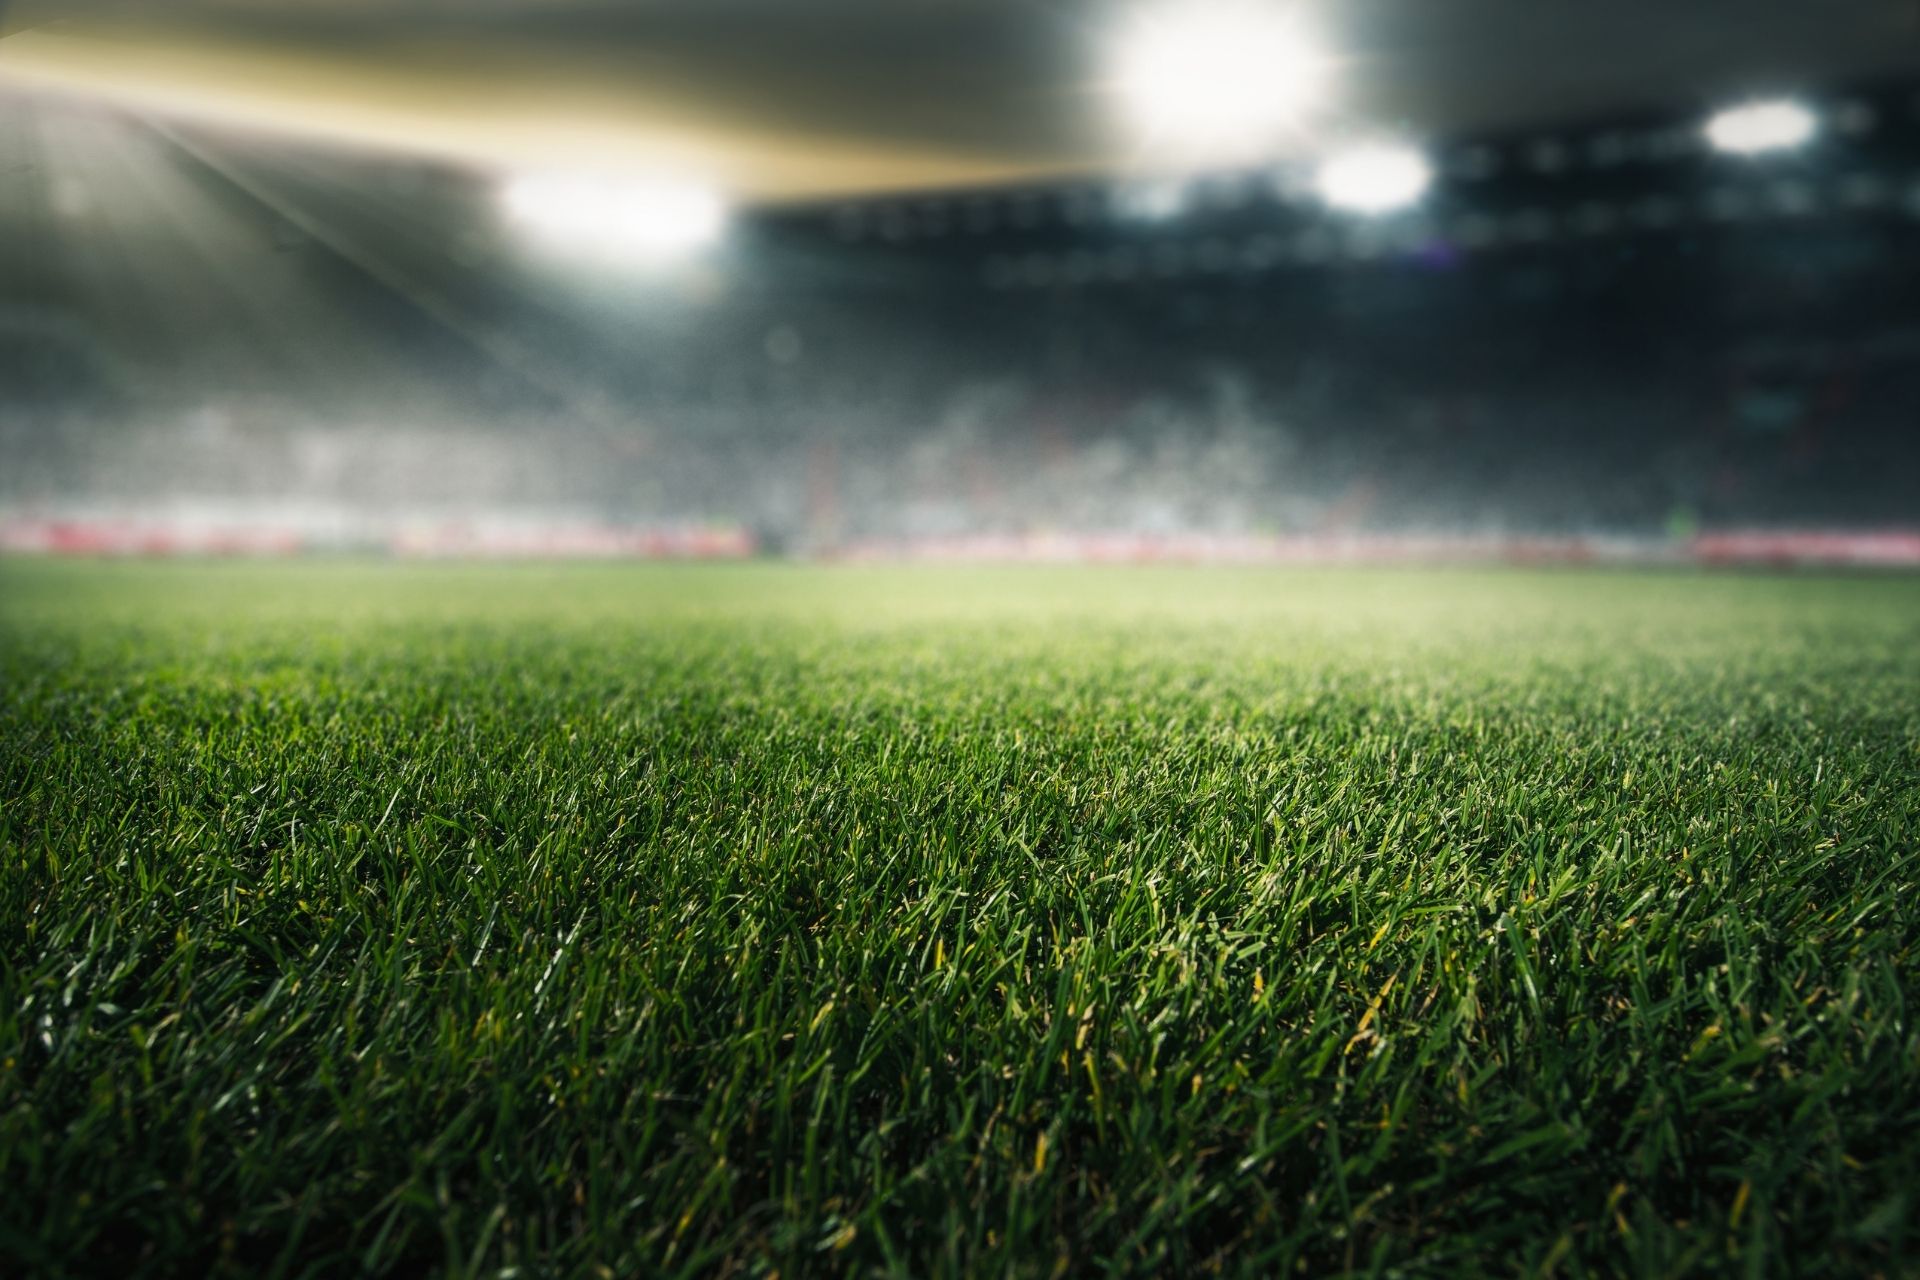 Na stadionie Roazhon Park dnia 2023-08-13 15:05 miało miejsce spotkanie między Rennes i Metz - 5-1